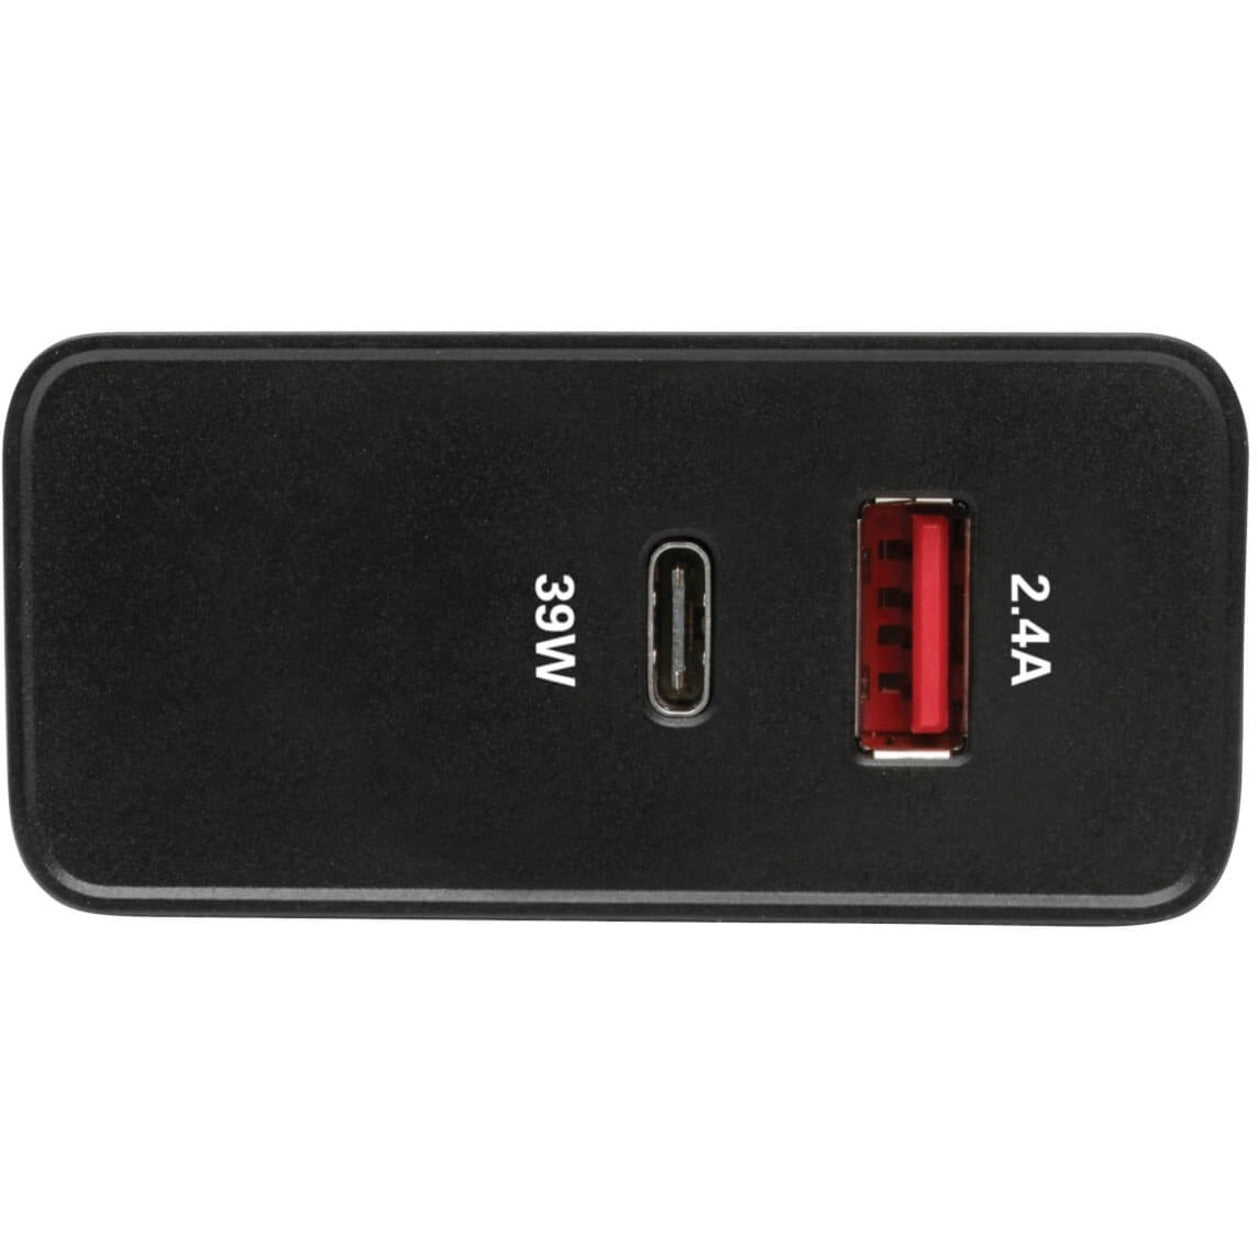 Tripp Lite Adaptador de CA U280-W02-A1C1 Cargador de pared con 2 puertos USB y USB tipo C Potencia de 51W Garantía de 2 años